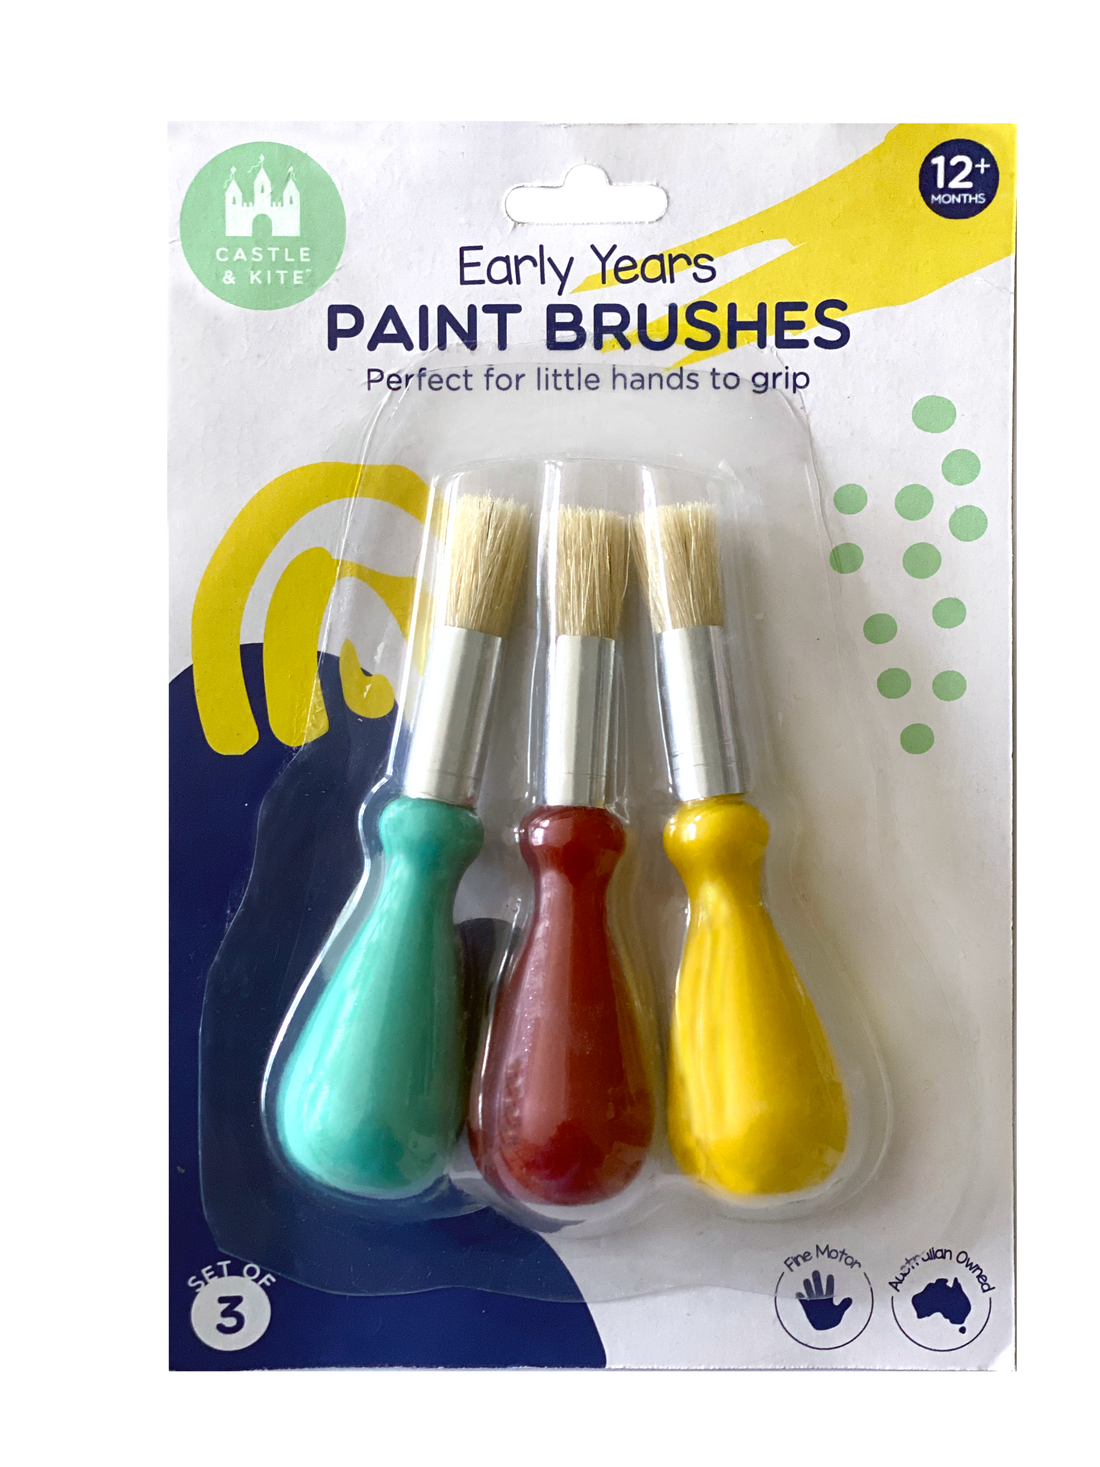 Castle &amp; Kite Paint Brushes